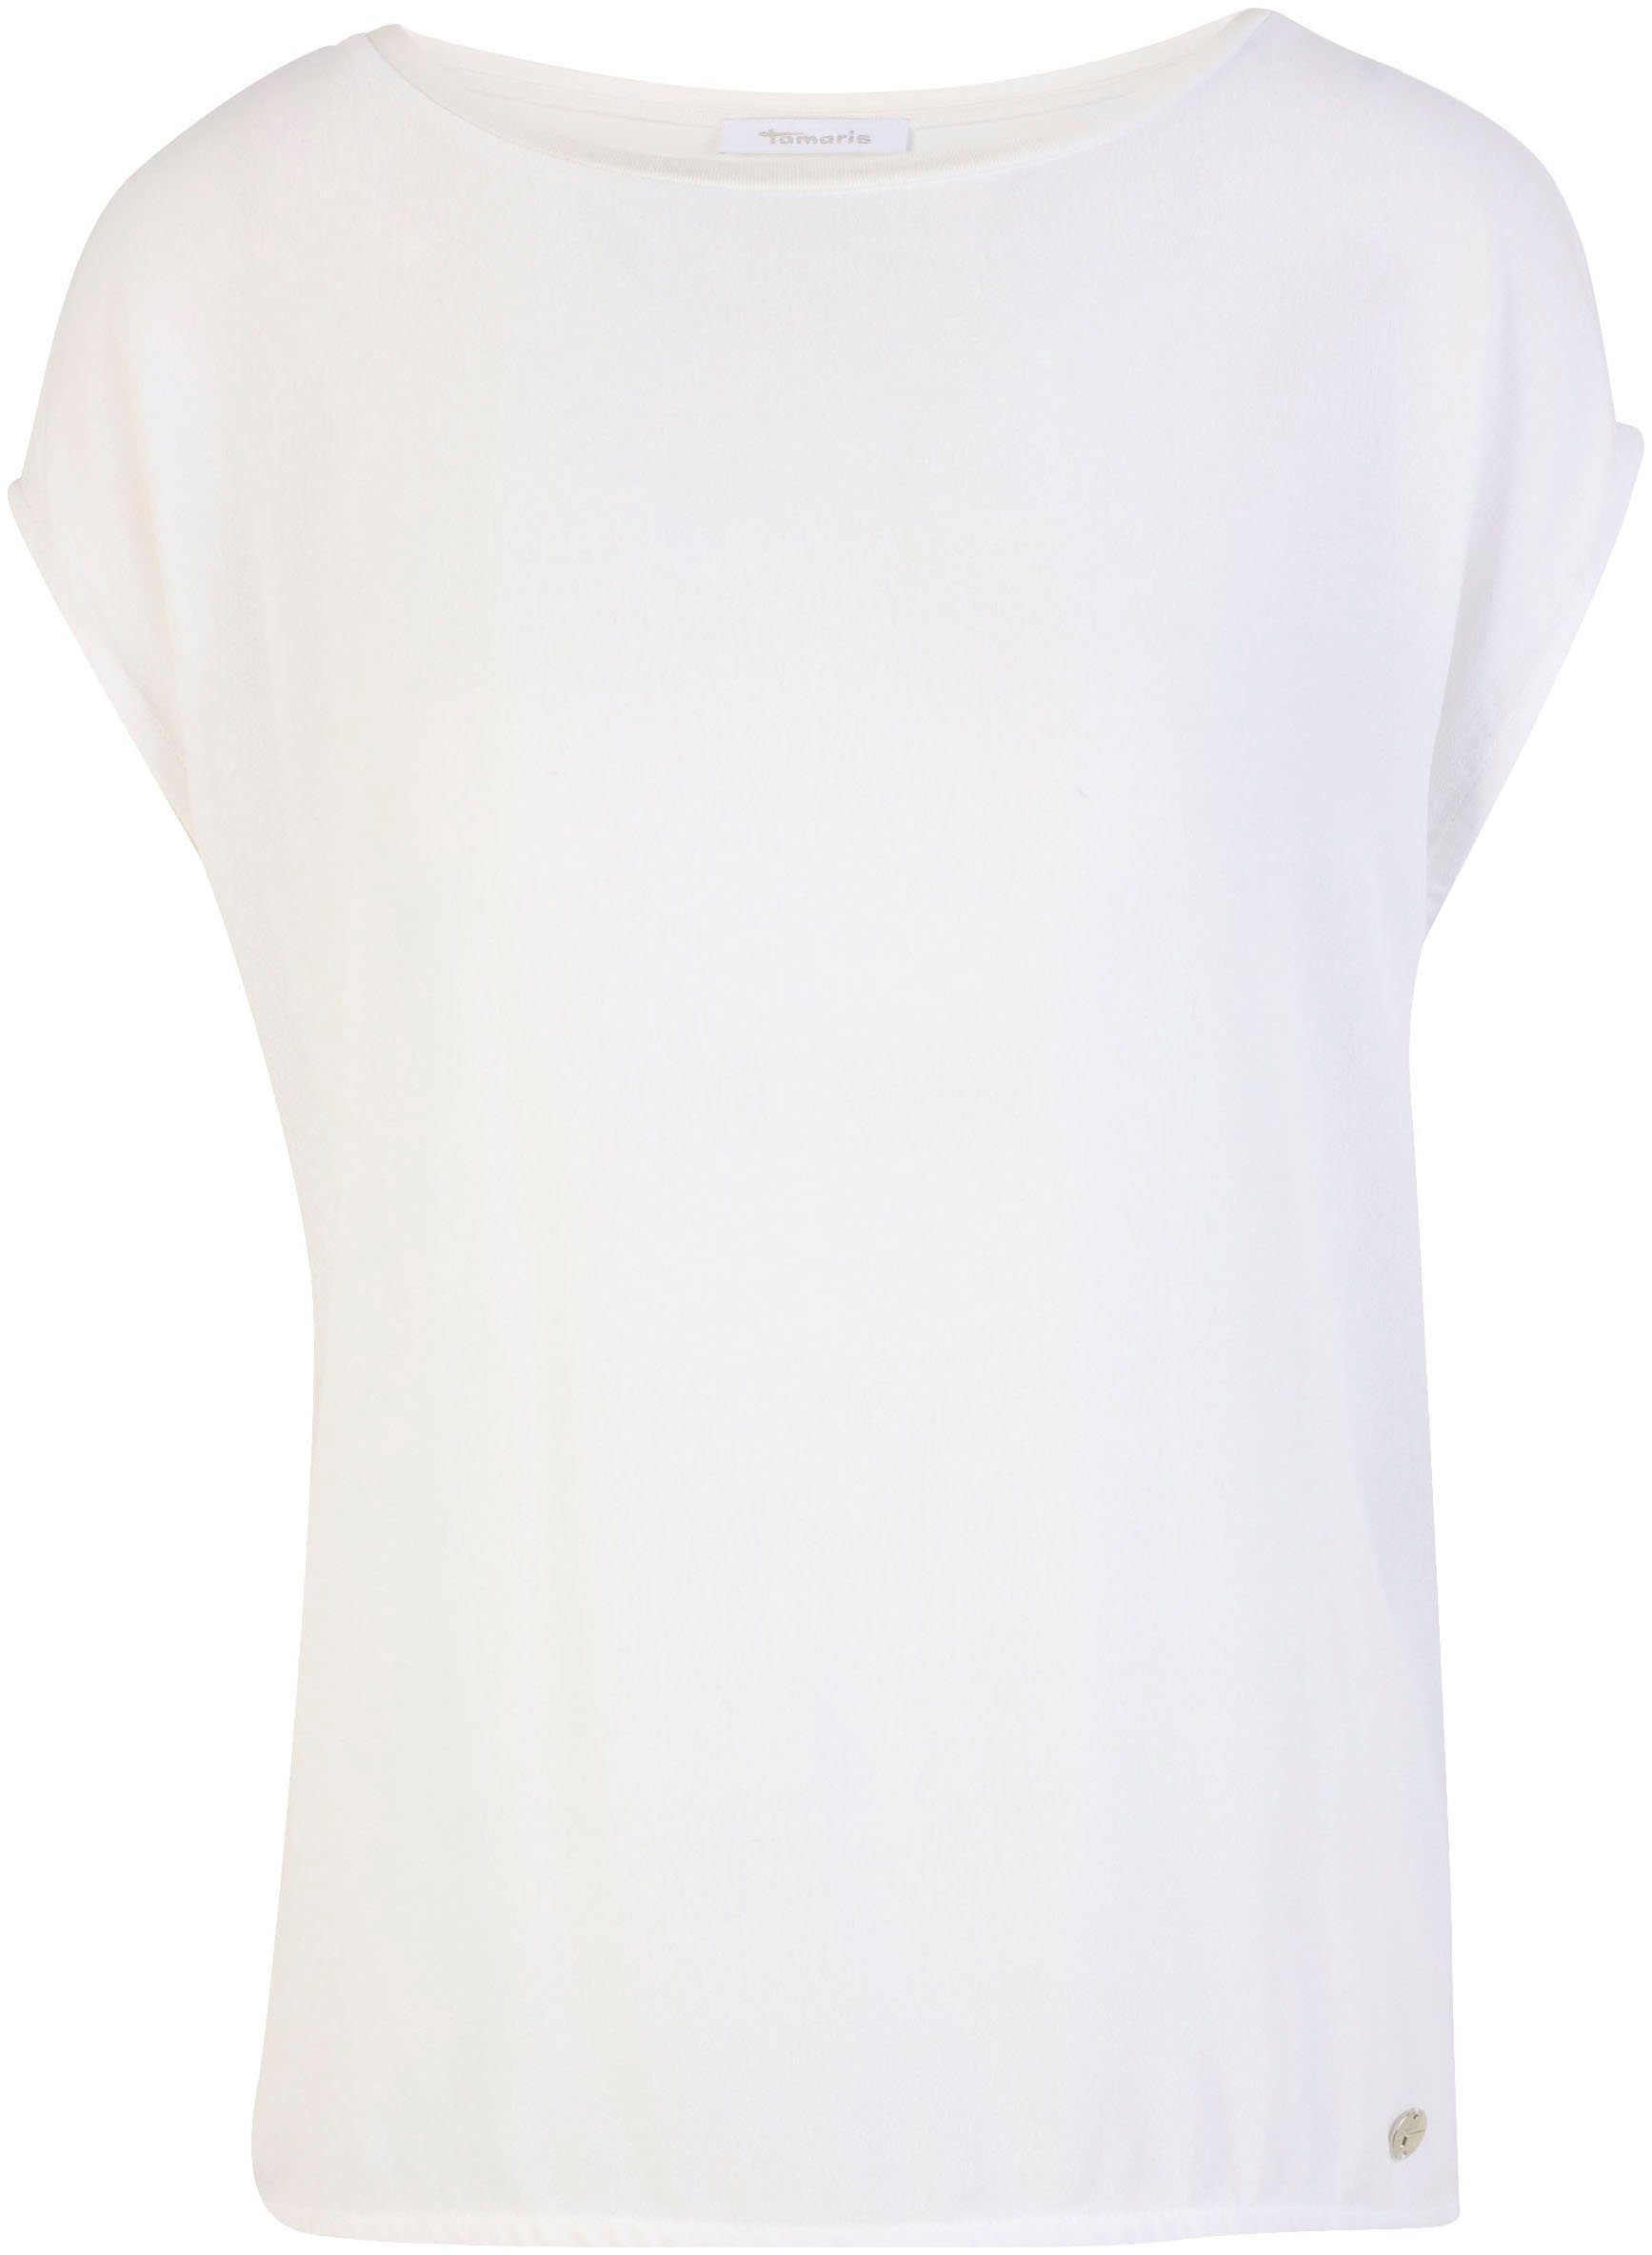 Blusenshirt mit bright NEUE KOLLEKTION white - Rundhalsausschnitt Tamaris